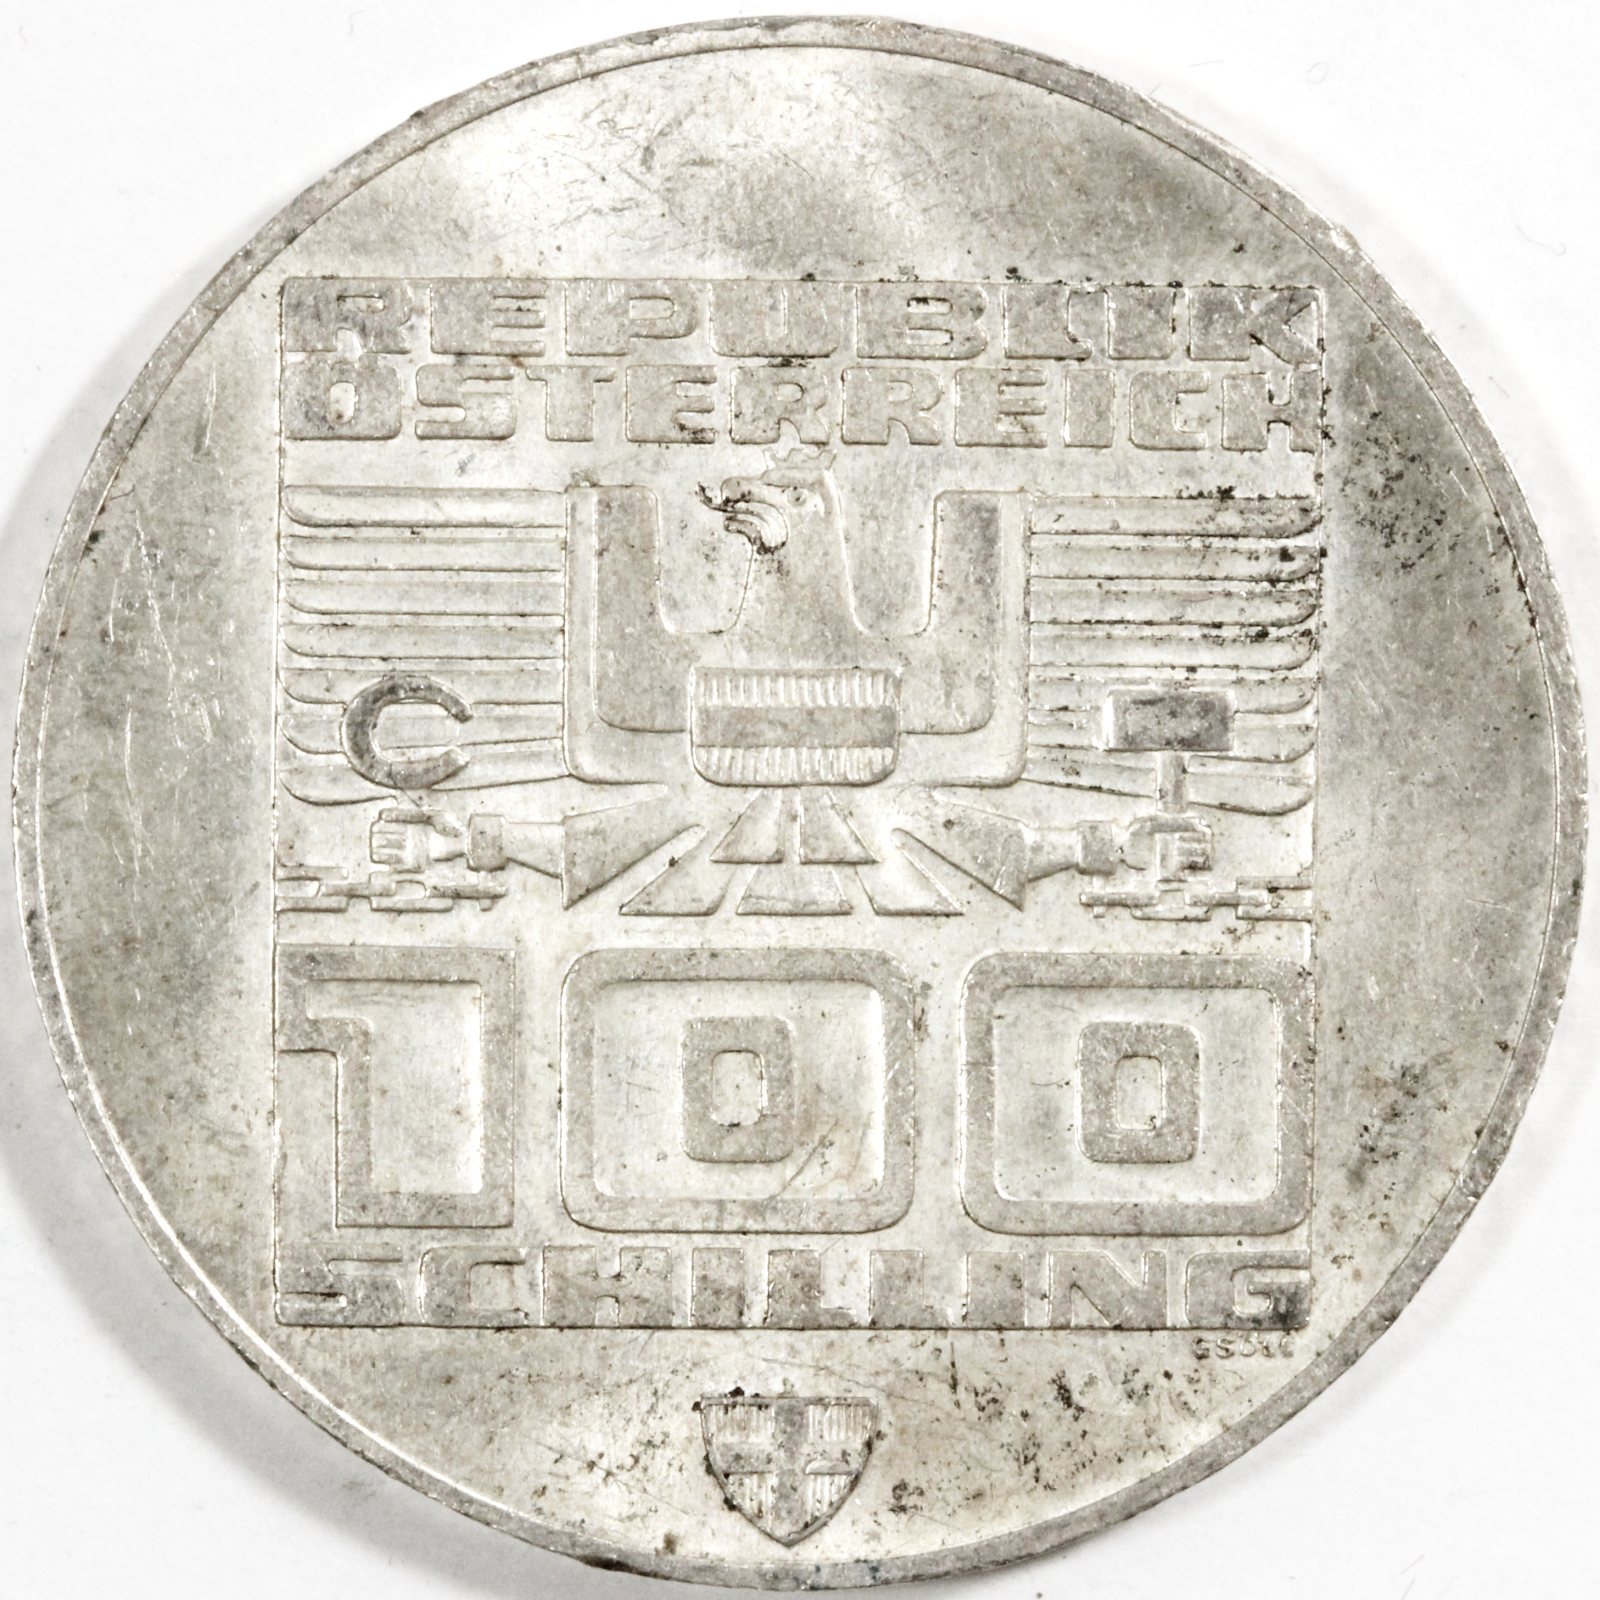 951円 安値 1976年 オーストリア インスブルック冬季オリンピック記念100シリング銀貨